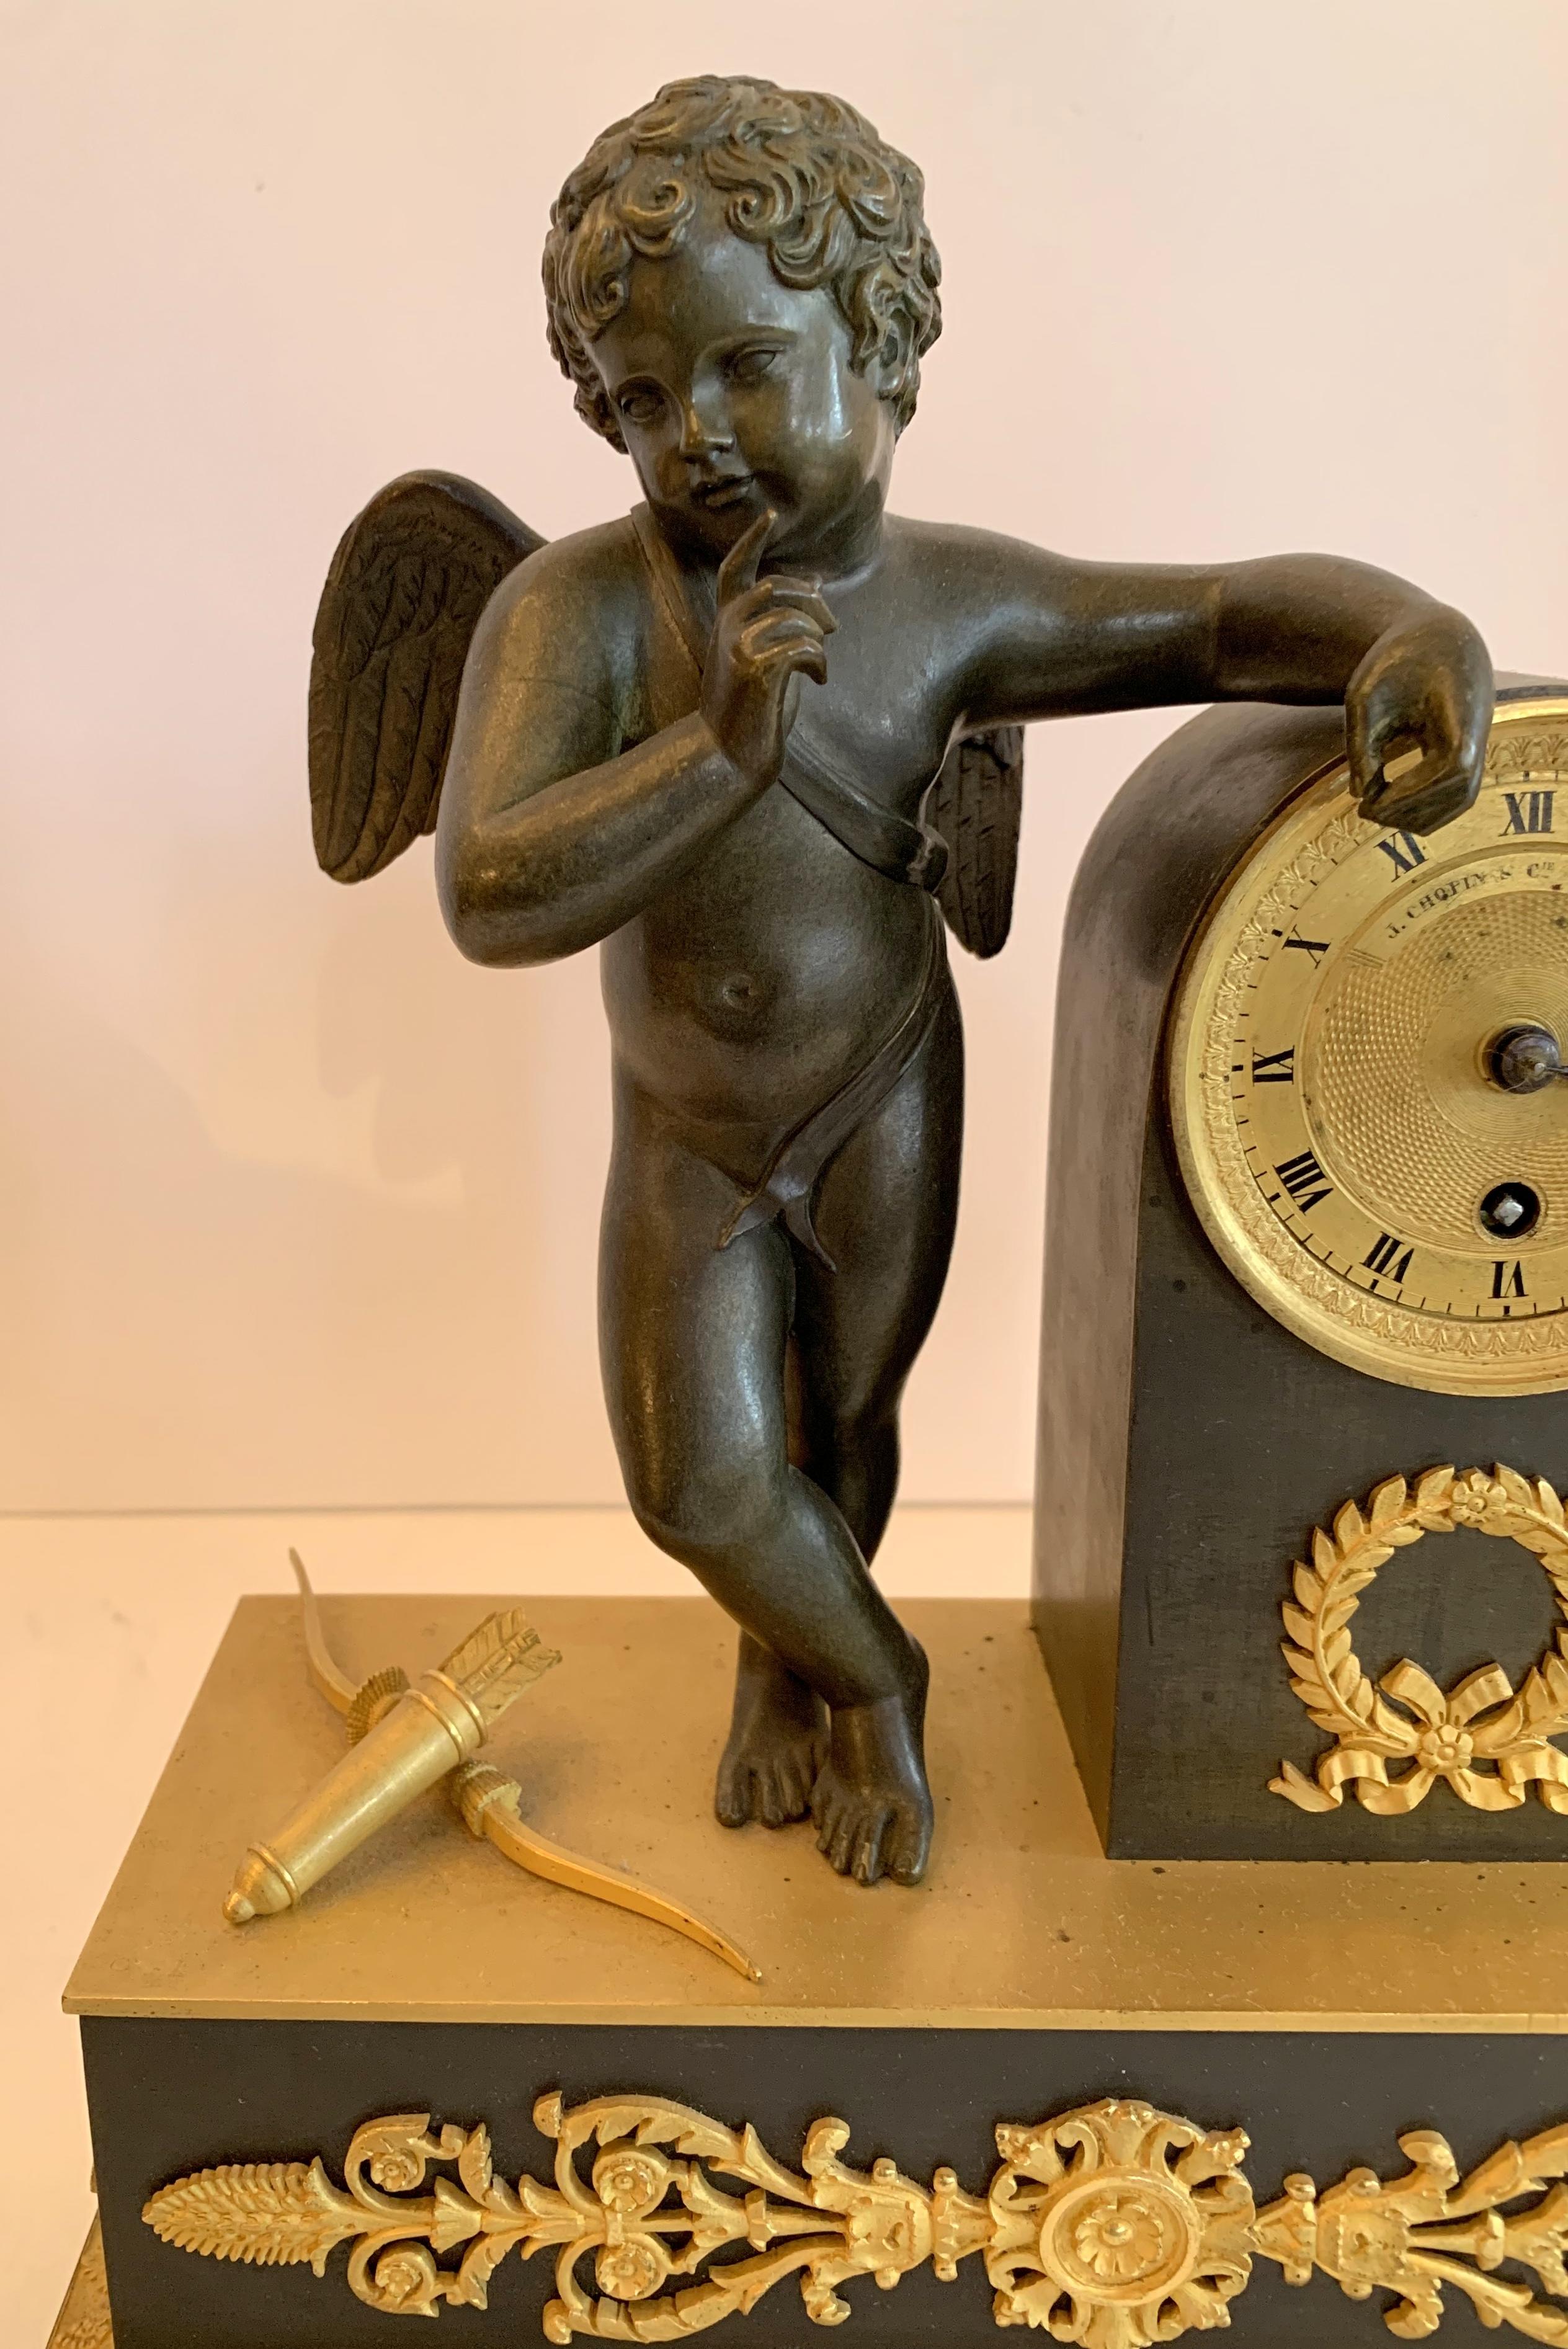 Une merveilleuse horloge Empire français doré et bronze patiné Cherub Putti wreath, pas actuellement en état de marche, le couvercle arrière est manquant ainsi que la cloche.
 